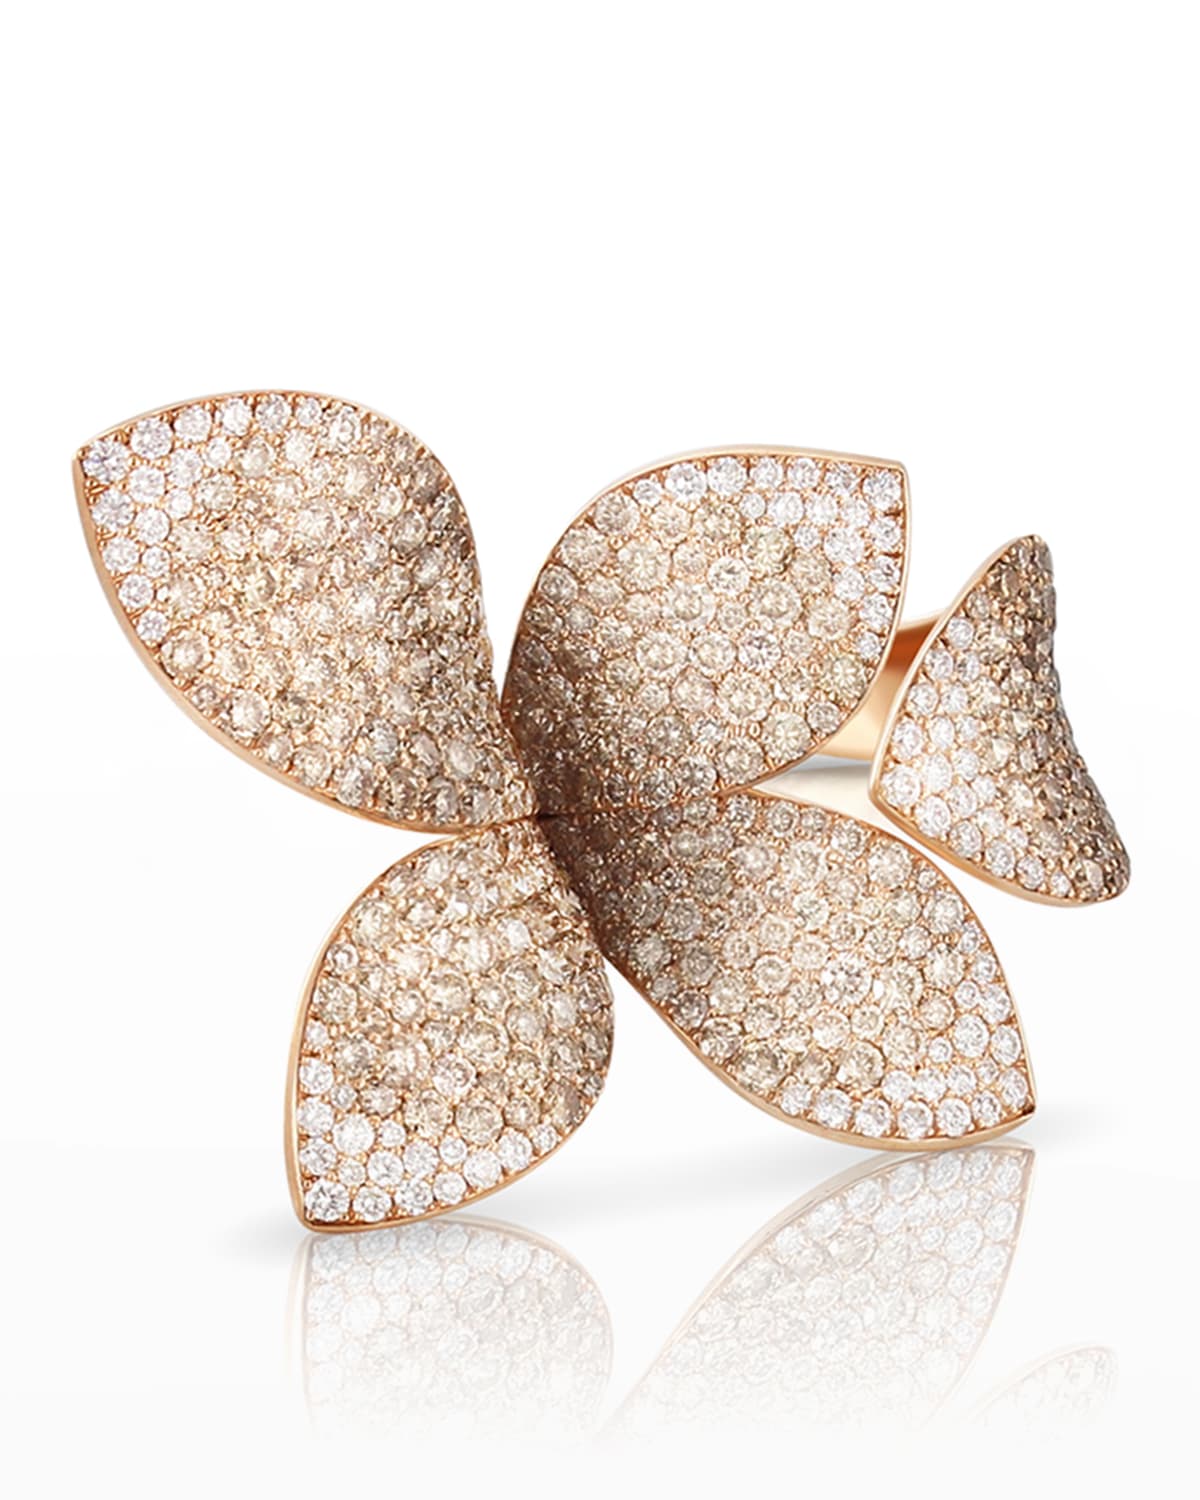 Giardini Segreti 18k Rose Gold Diamond Leaf Ring, 4.35 cts., Size 6